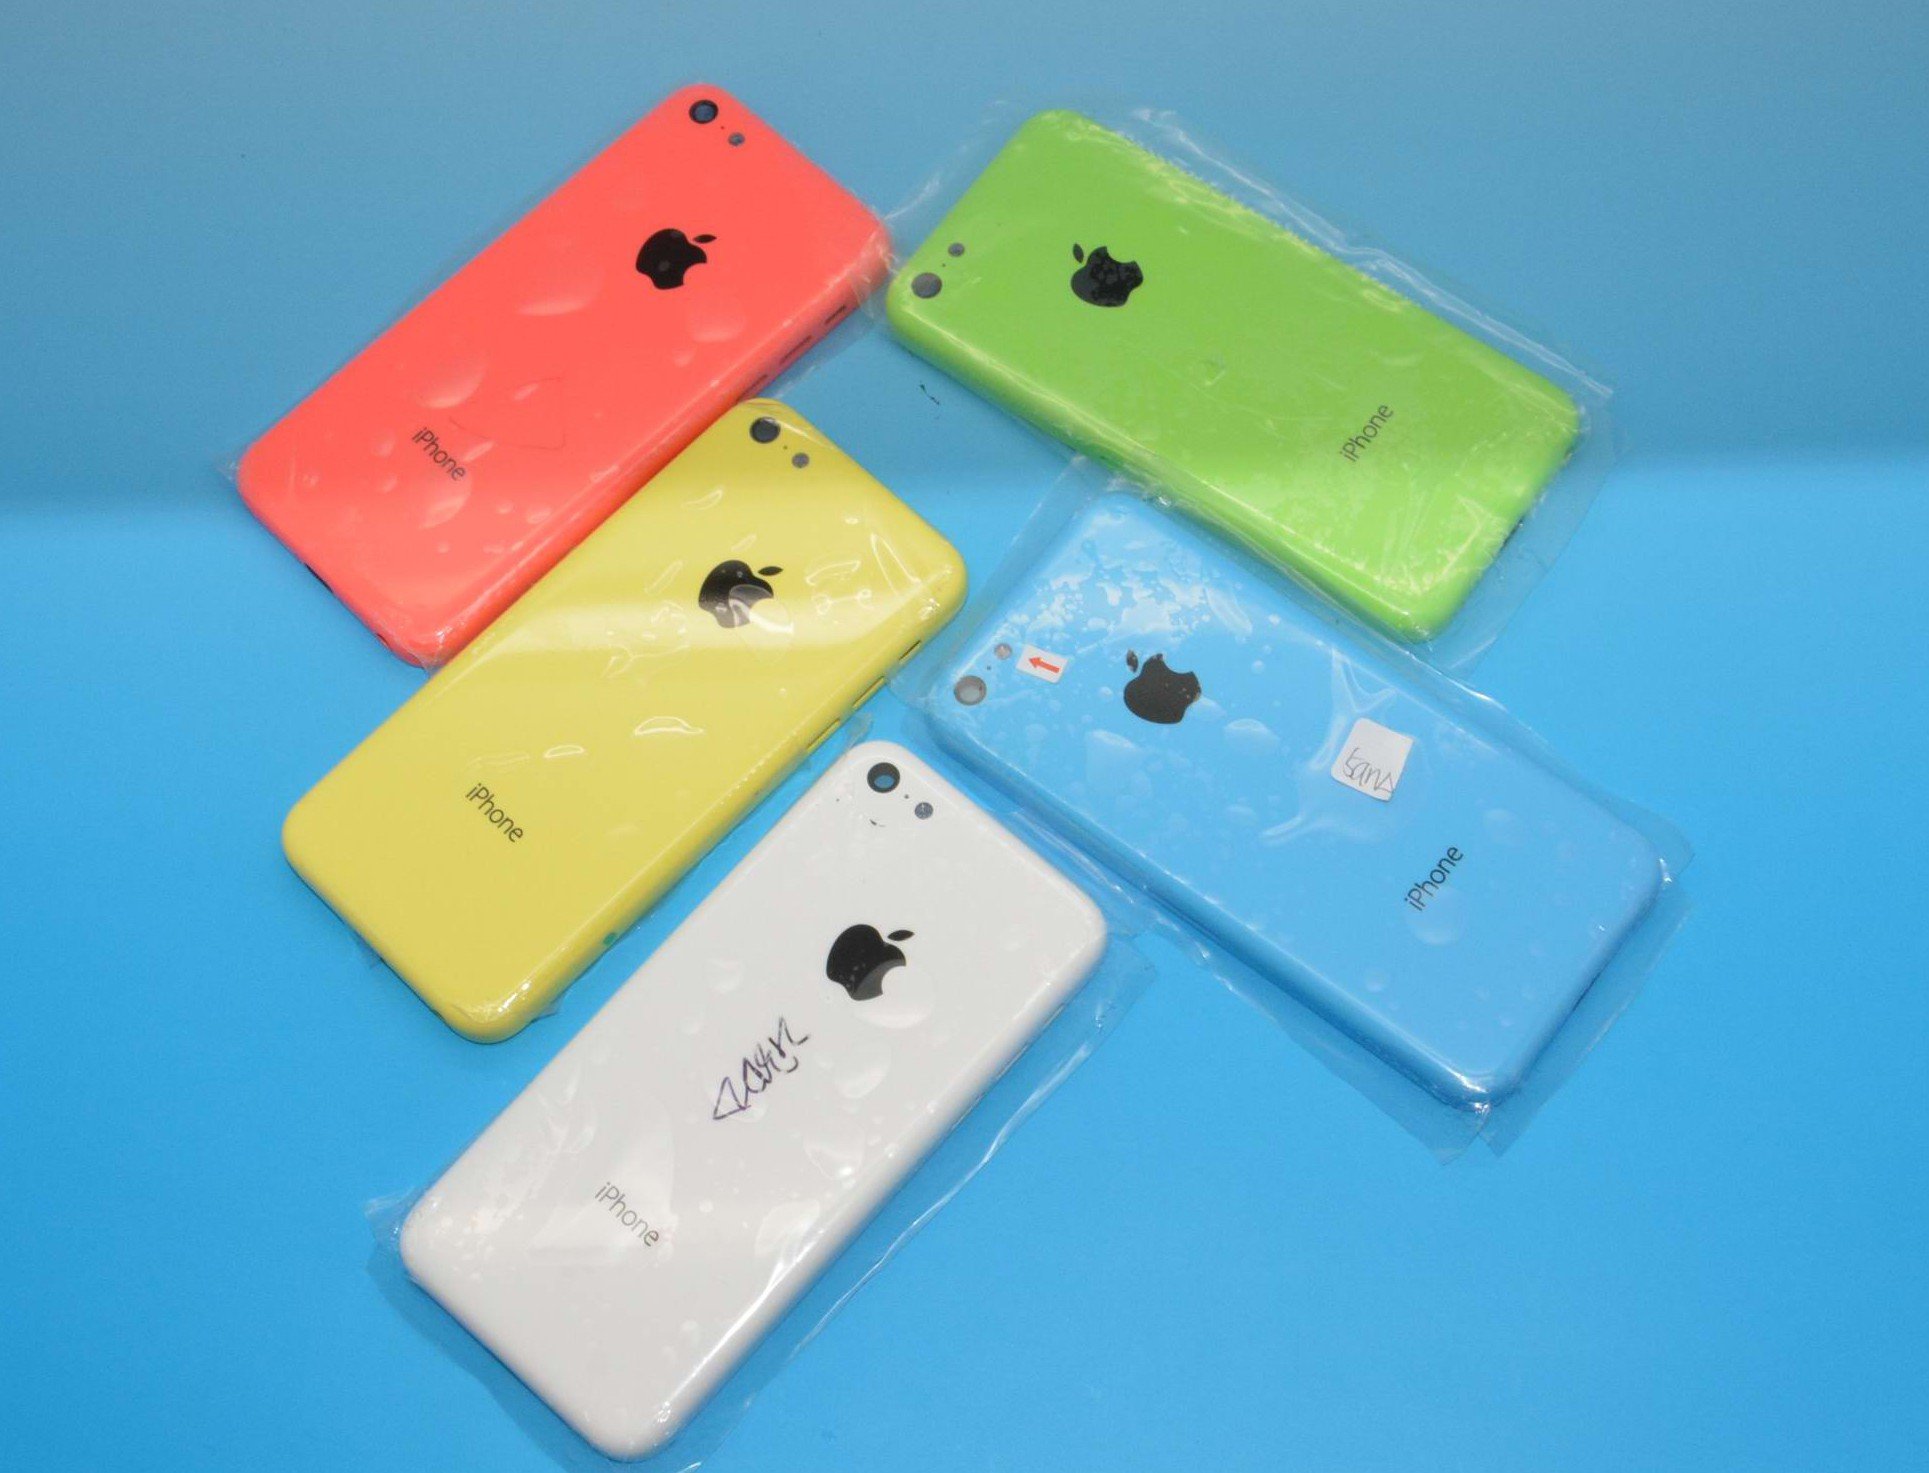 Fotos iPhone 5C: alle Farben, kein schwarz? 2